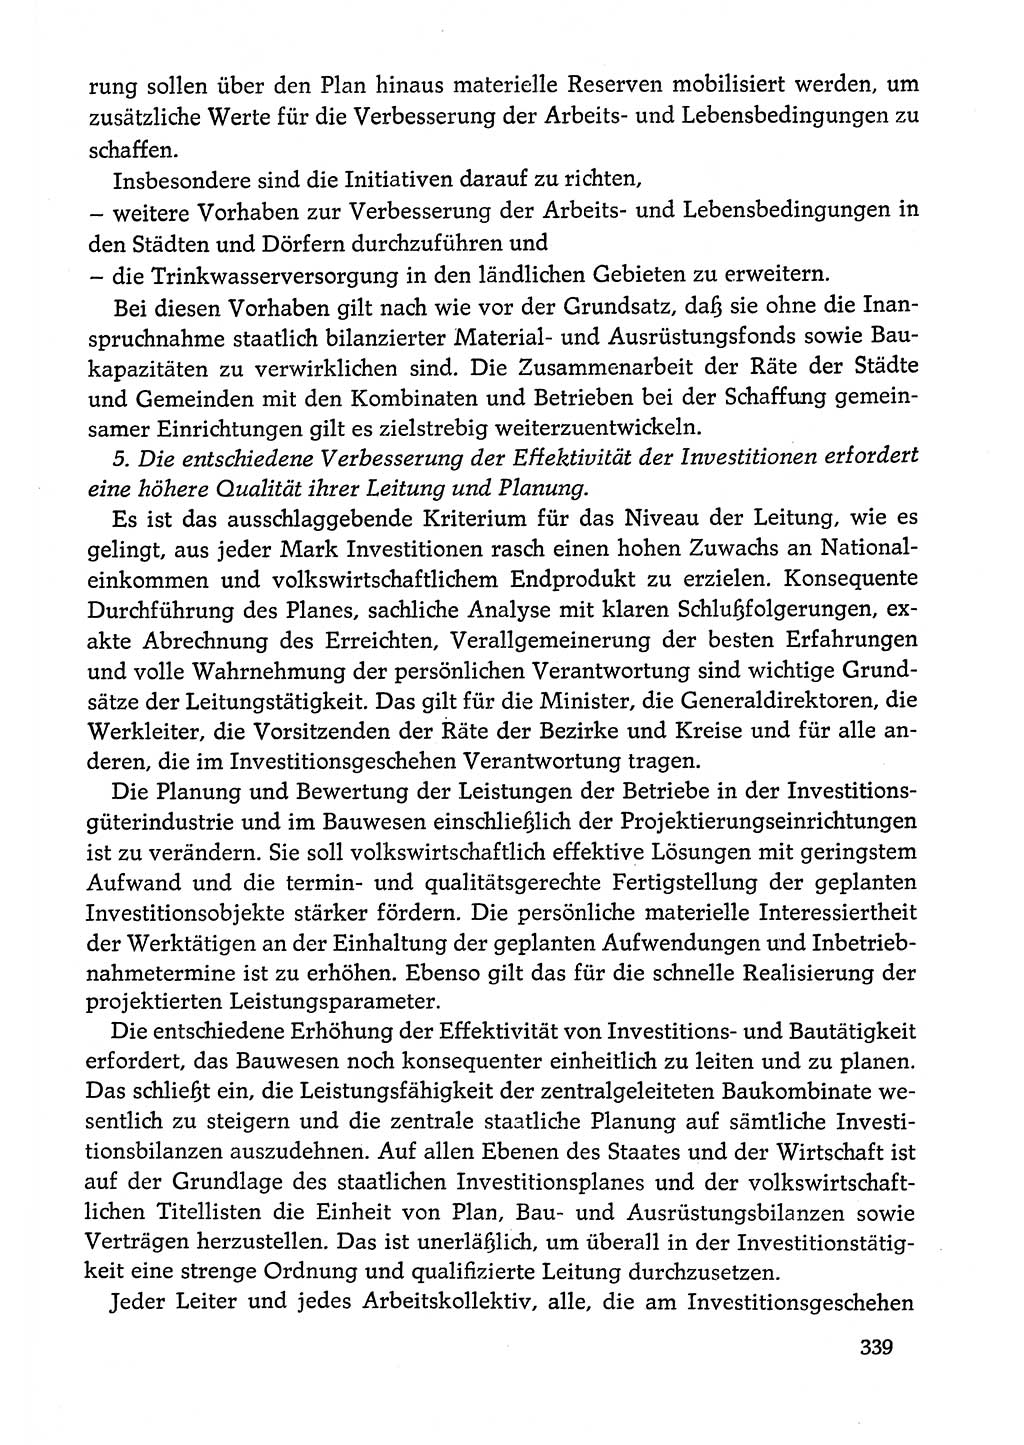 Dokumente der Sozialistischen Einheitspartei Deutschlands (SED) [Deutsche Demokratische Republik (DDR)] 1978-1979, Seite 339 (Dok. SED DDR 1978-1979, S. 339)